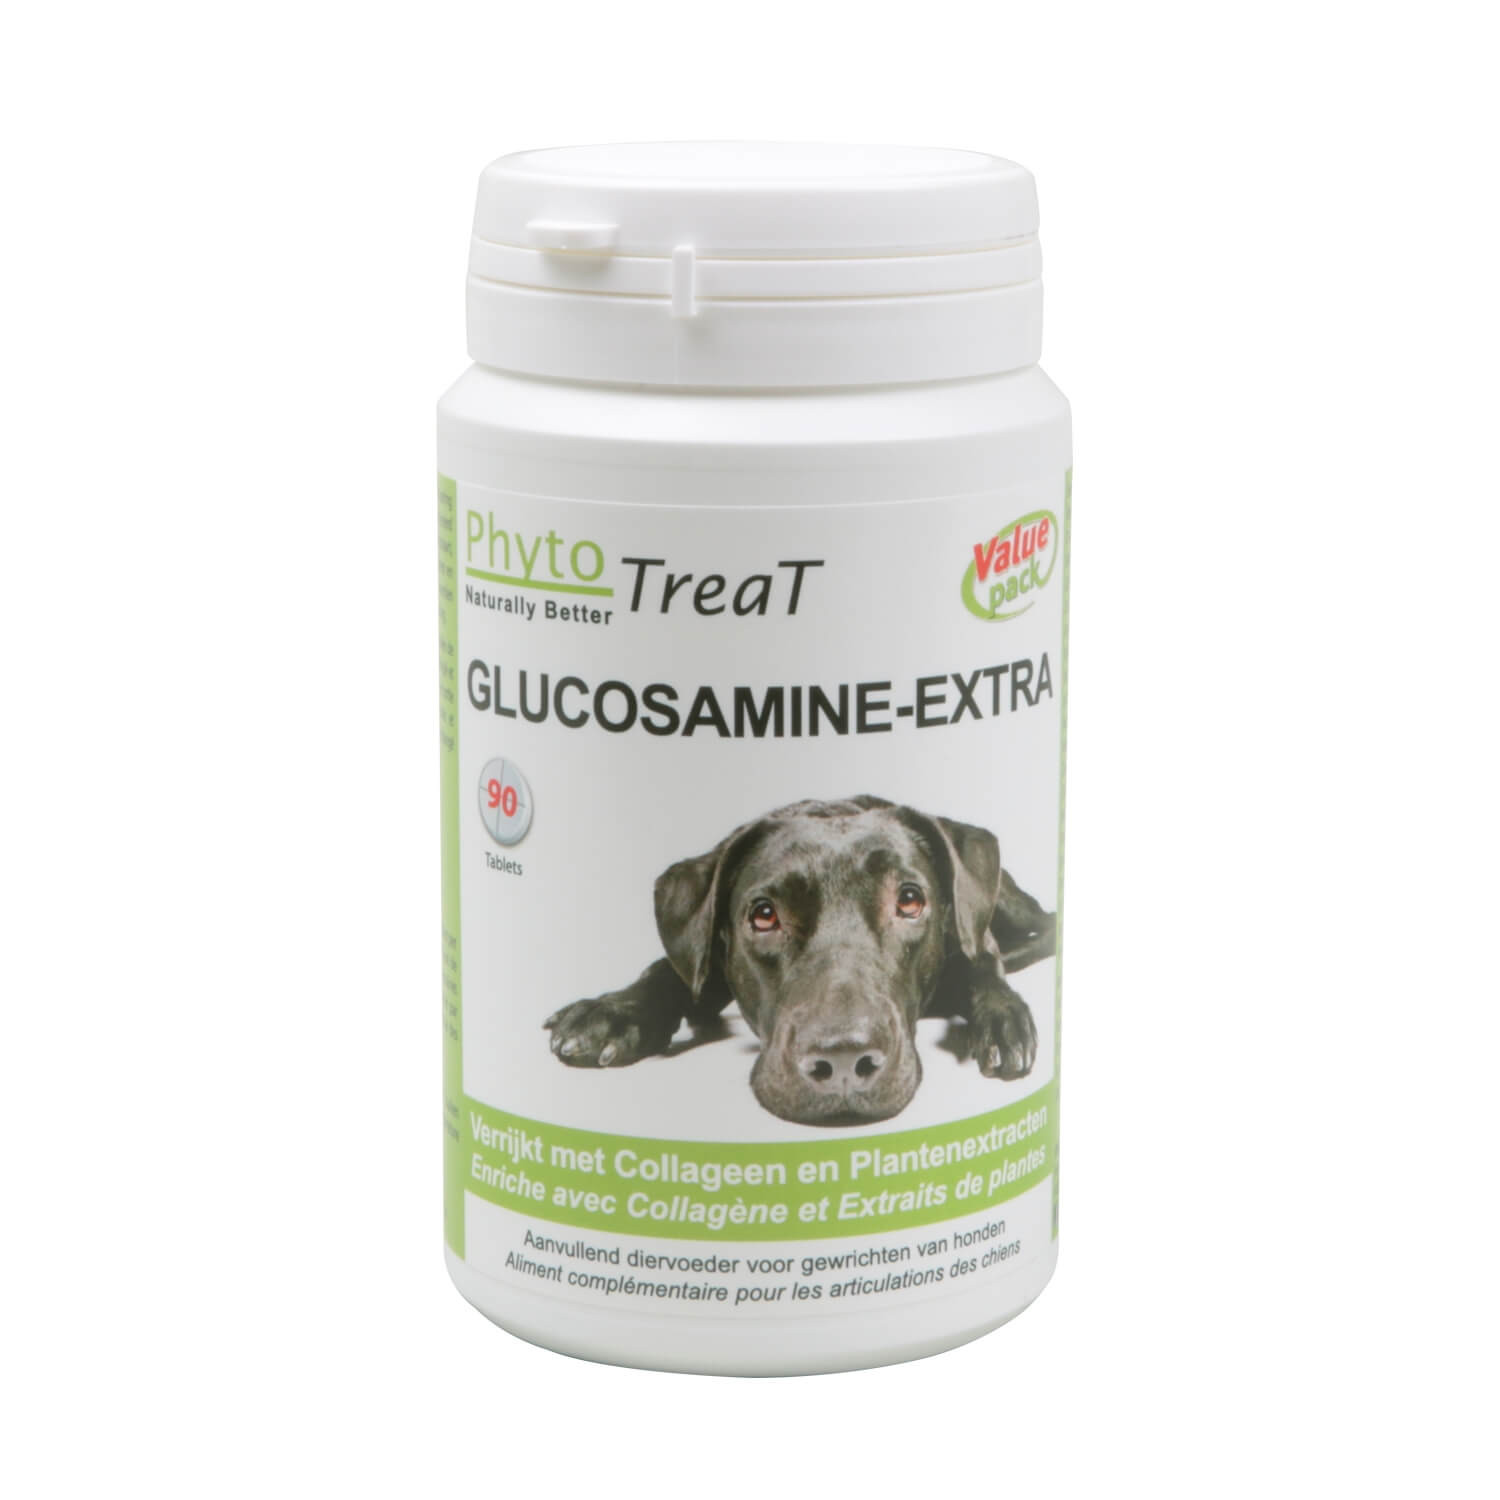 PhytoTreat Glucosamine-Extra voor de hond